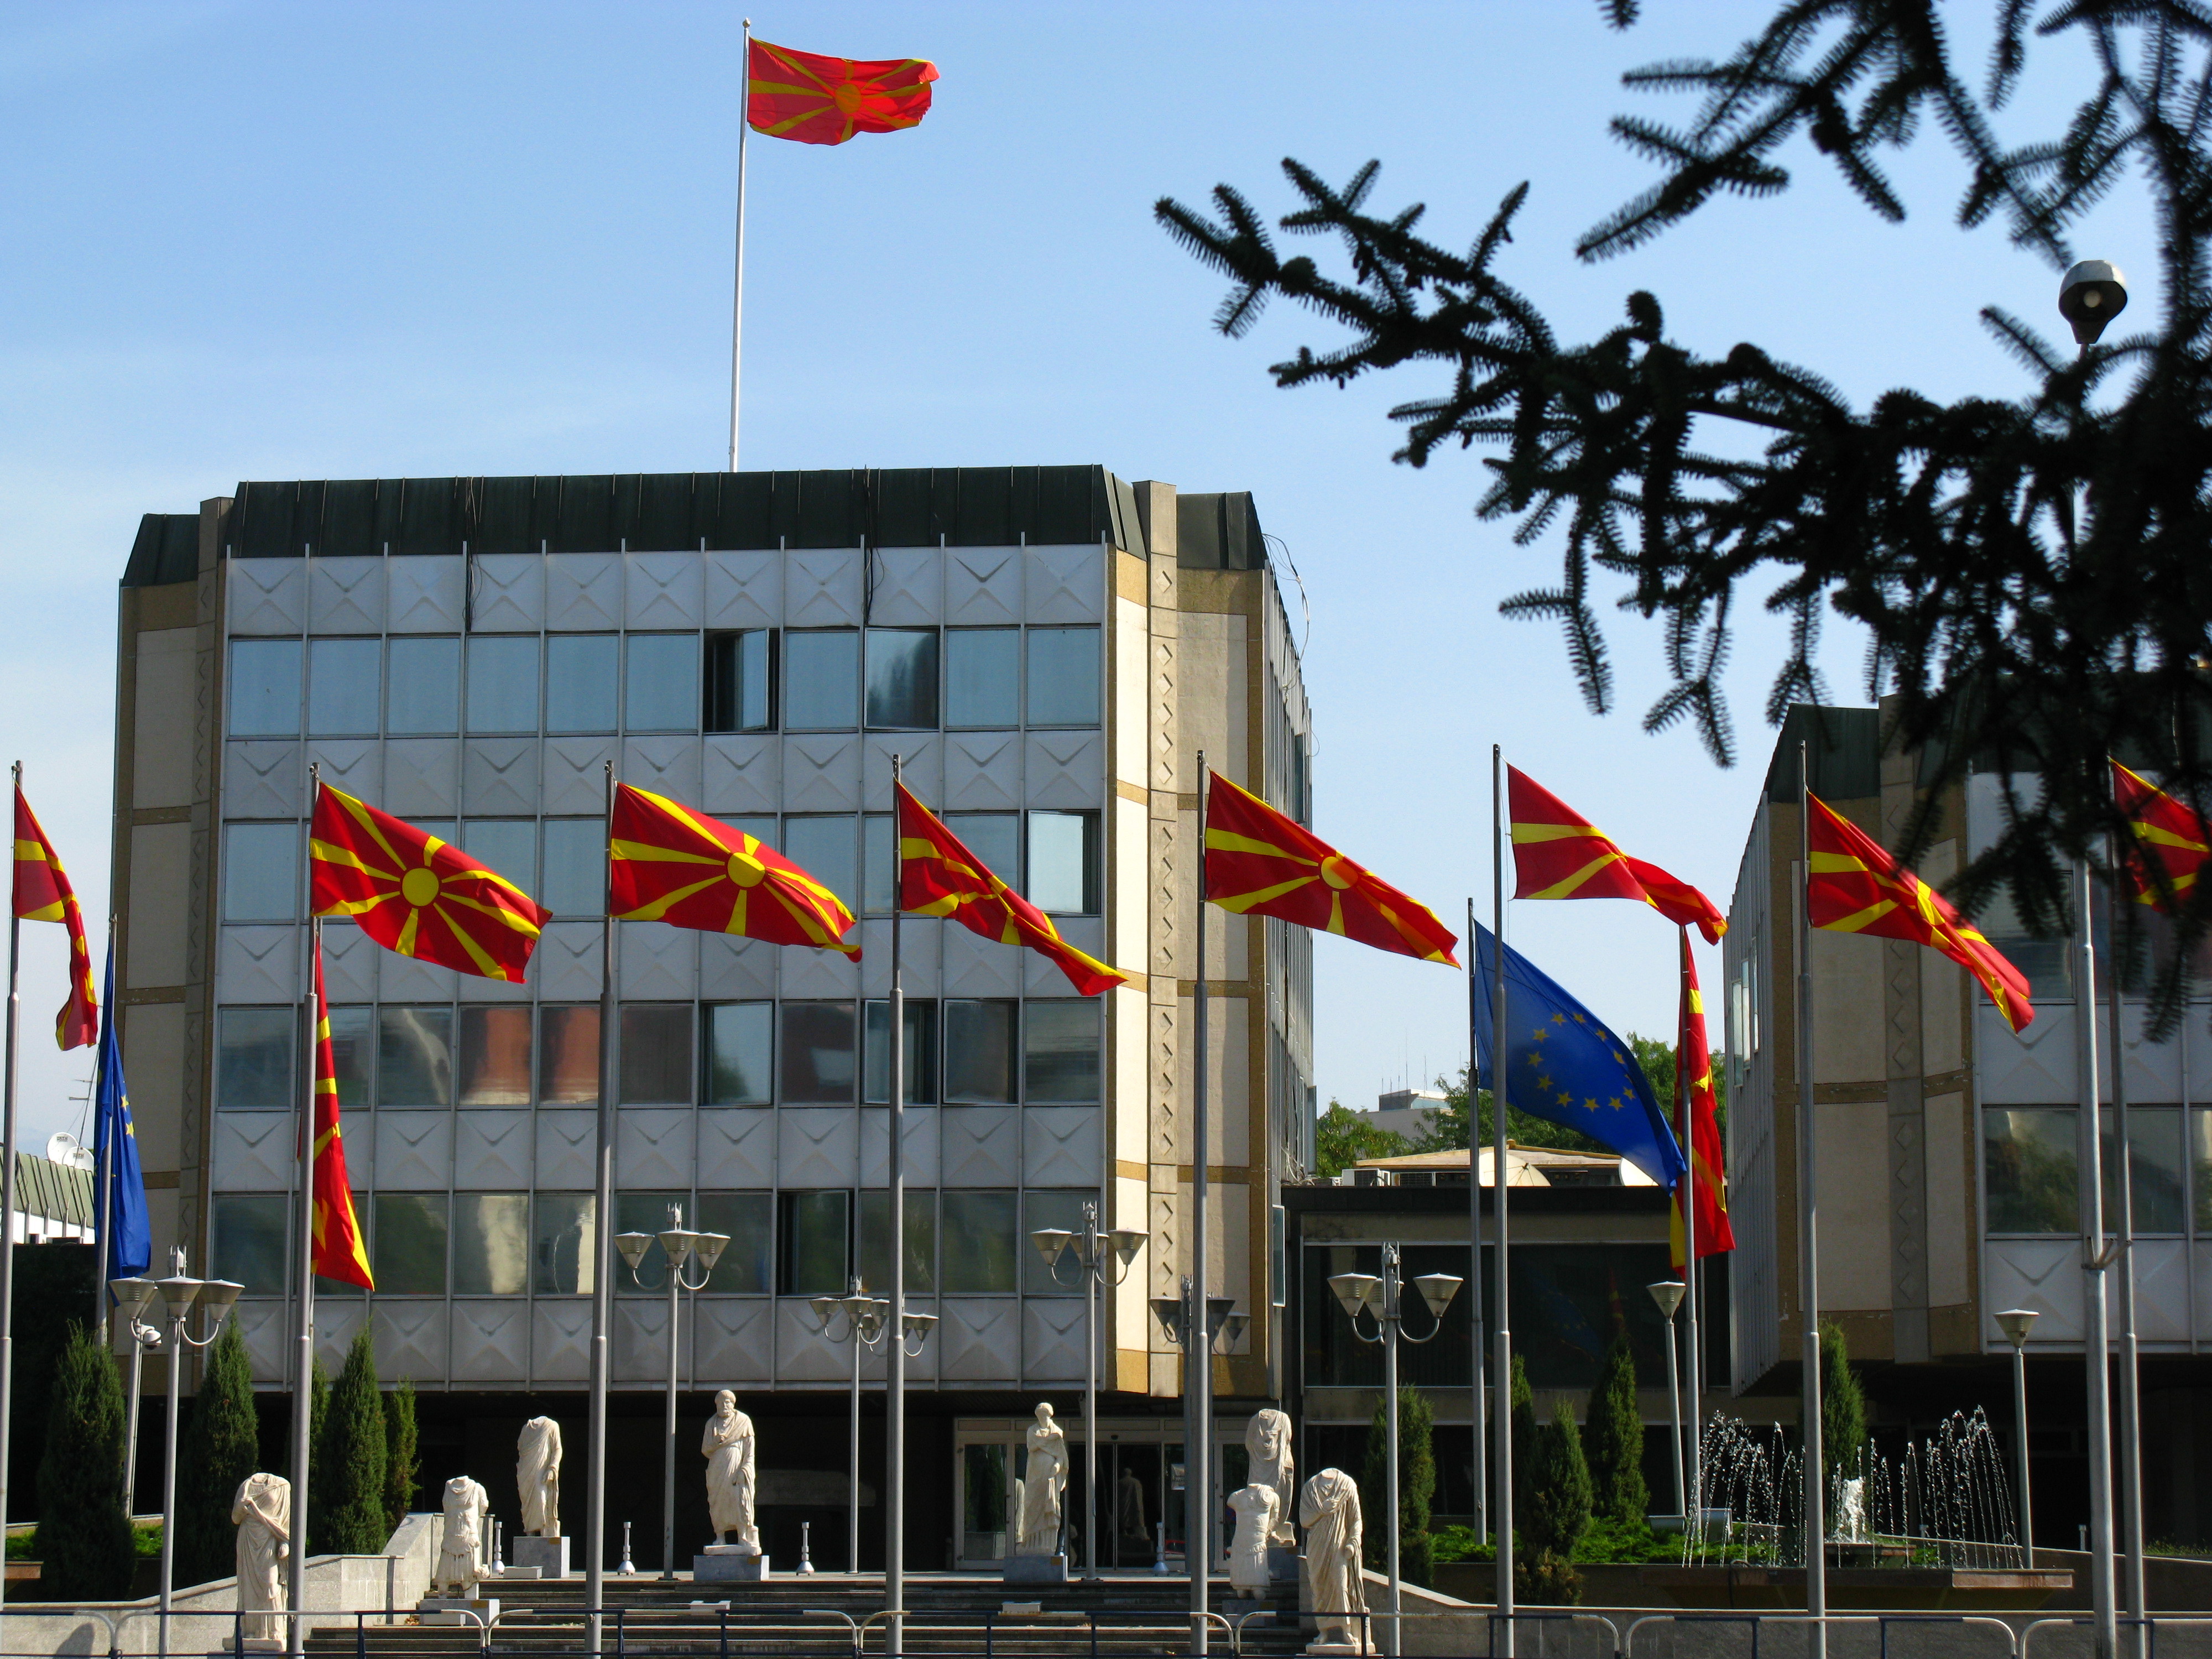 ΠΓΔΜ: Ο κατασκευαστικός τομέας κινητήρια δύναμη της ανάπτυξης της οικονομίας